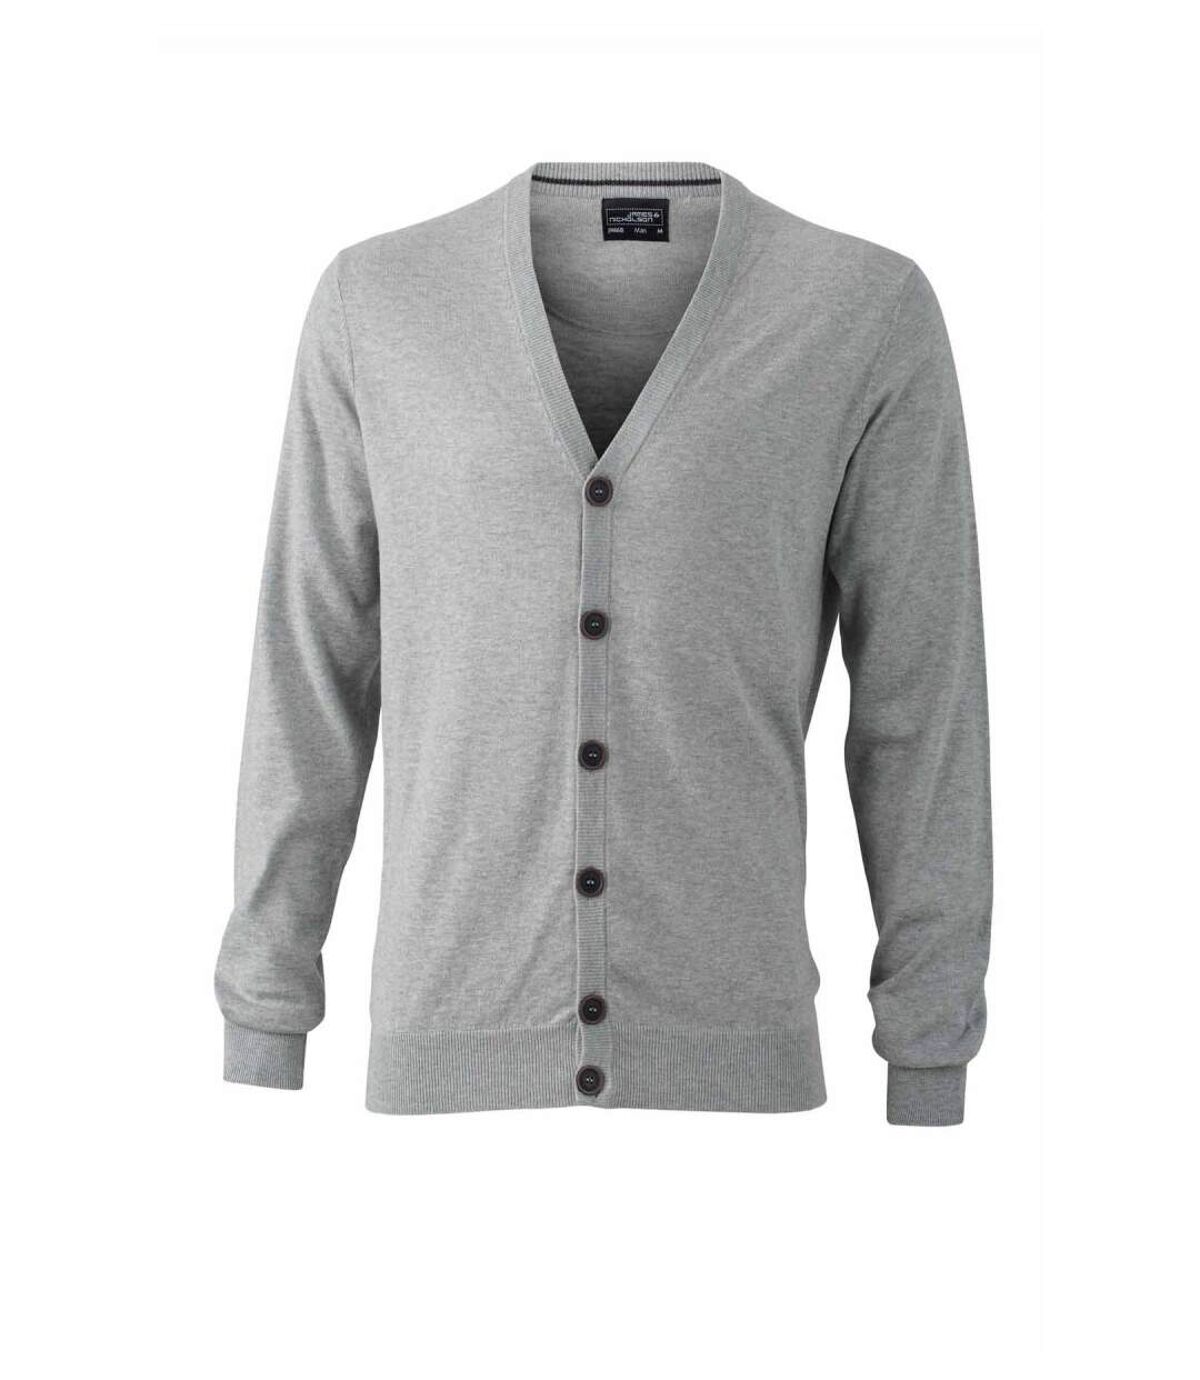 Pull boutonné cardigan cachemire - HOMME - JN668 - gris clair